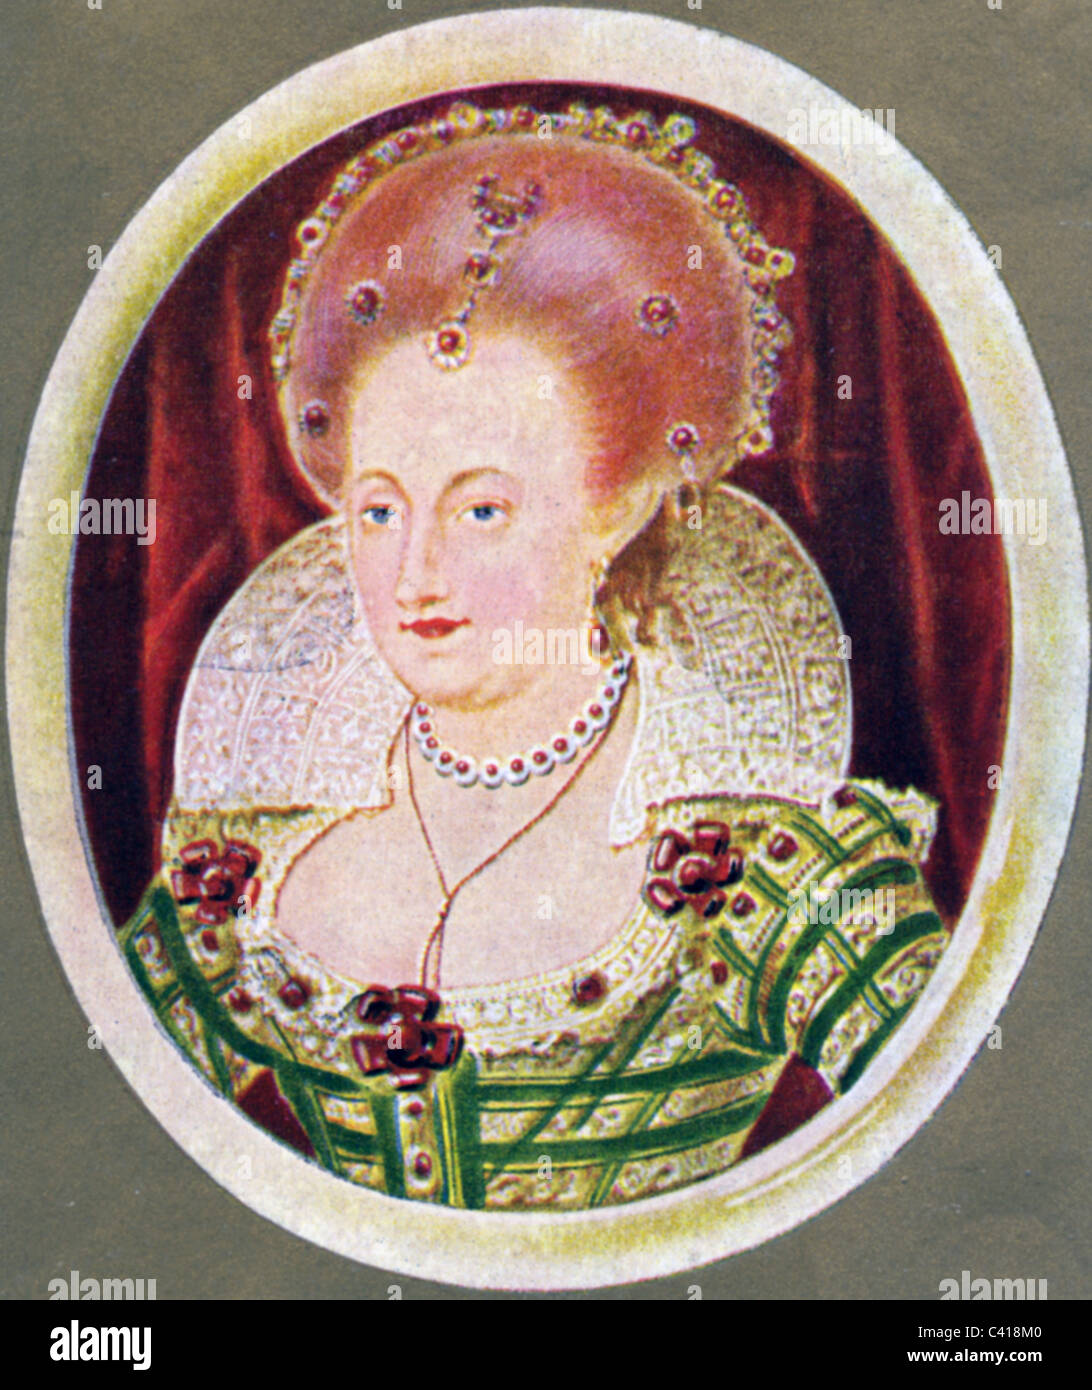 Anne, 12.12.1574 - 2.3.1619, Königin Consort von England 25.7.1603 - 2.3.1619, Porträt, Ausdruck nach Miniatur, 17. Jahrhundert, Zigarettenkarte, Hamburg, 1933, Stockfoto